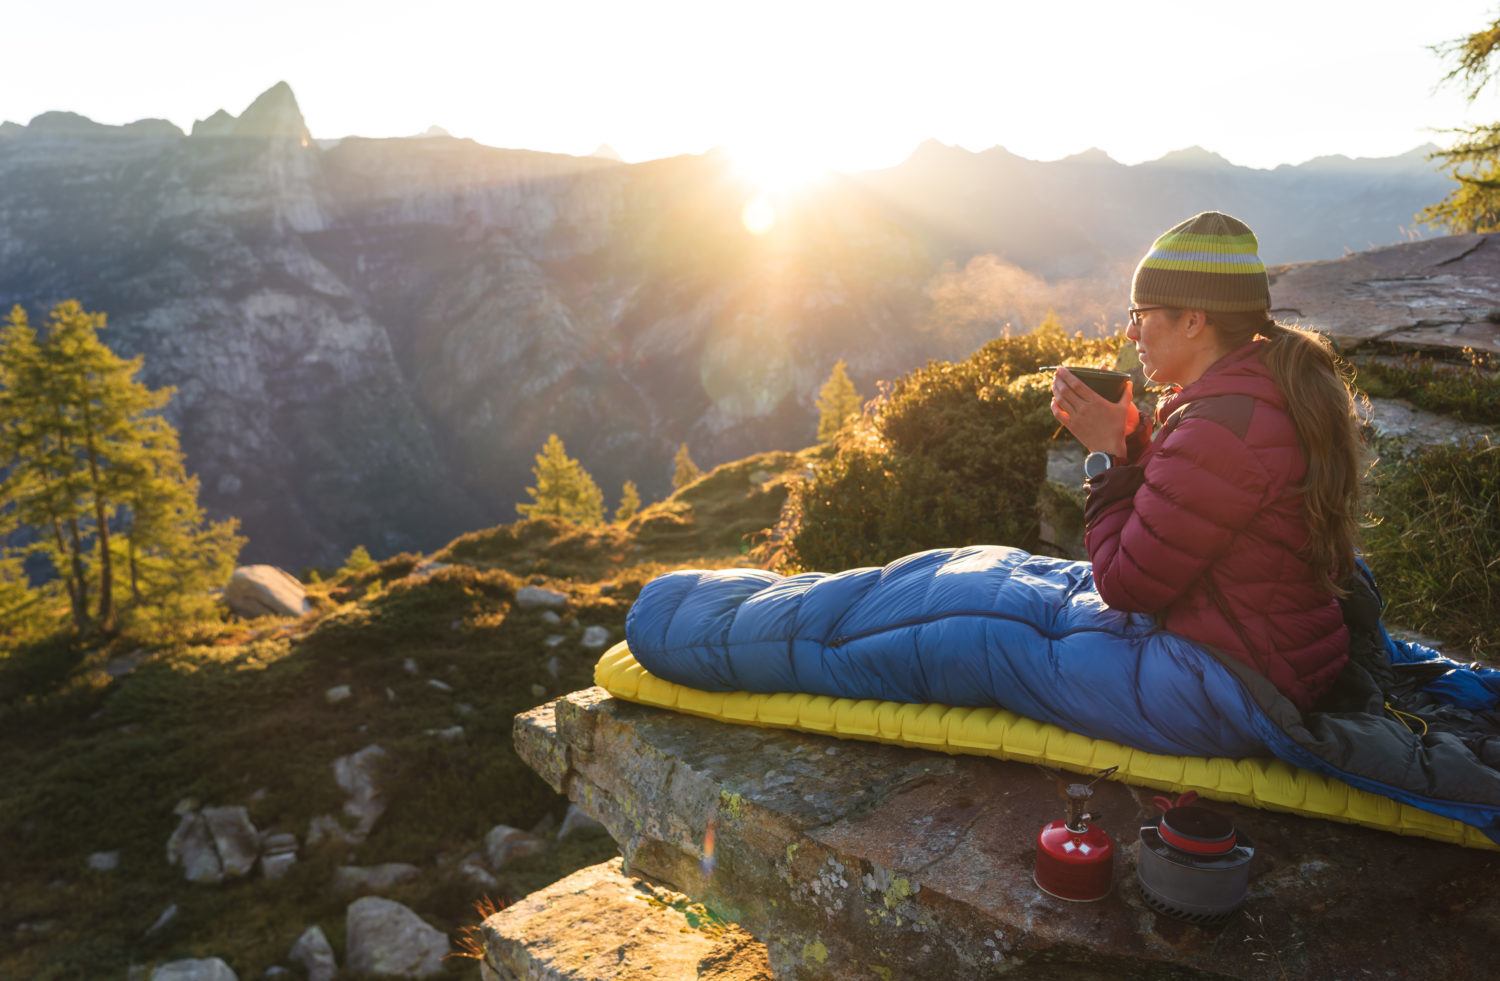 کیسه خواب کوهنوردی چیست؟